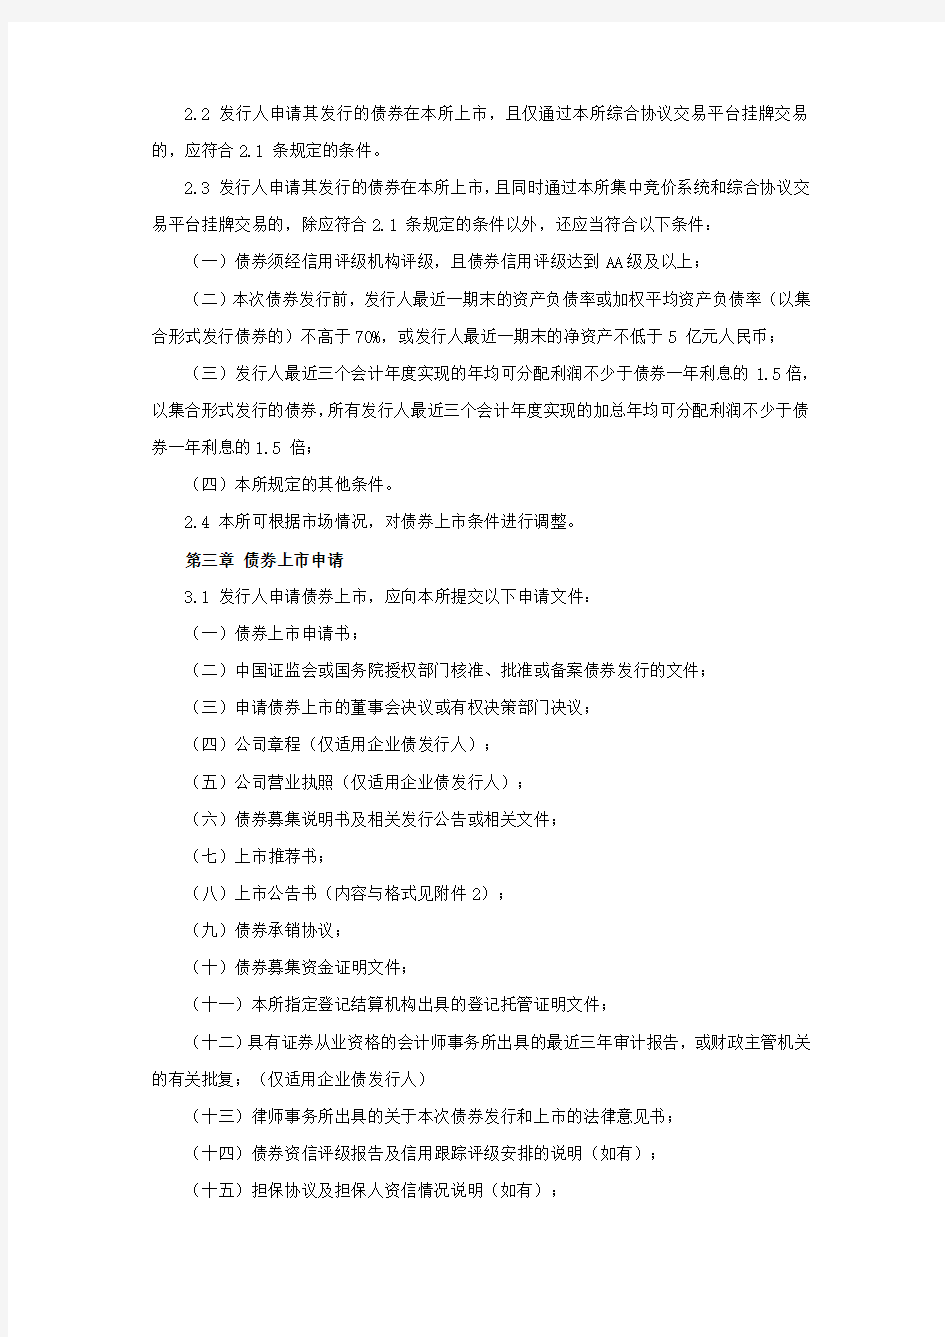 《深圳证券交易所公司债券上市规则》(2012年修订版)